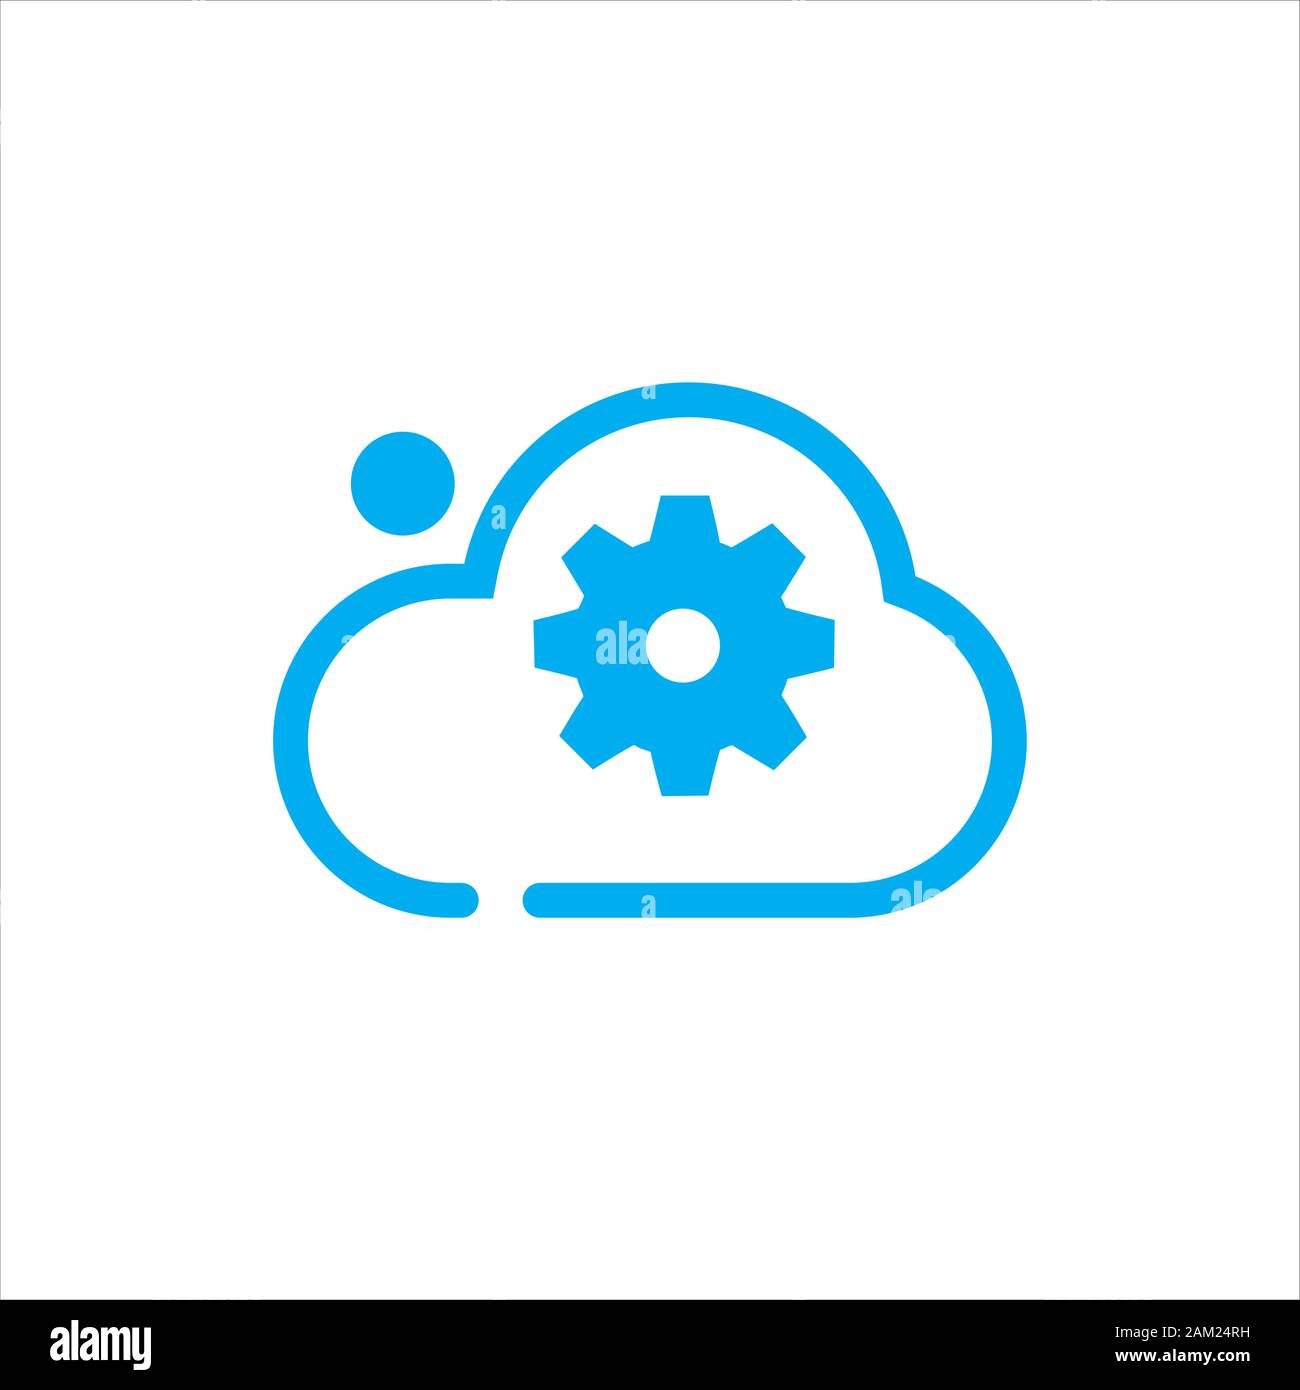 Résumé de la technologie de stockage cloud vecteur logo internet réseau numérique tech concept illustration Illustration de Vecteur